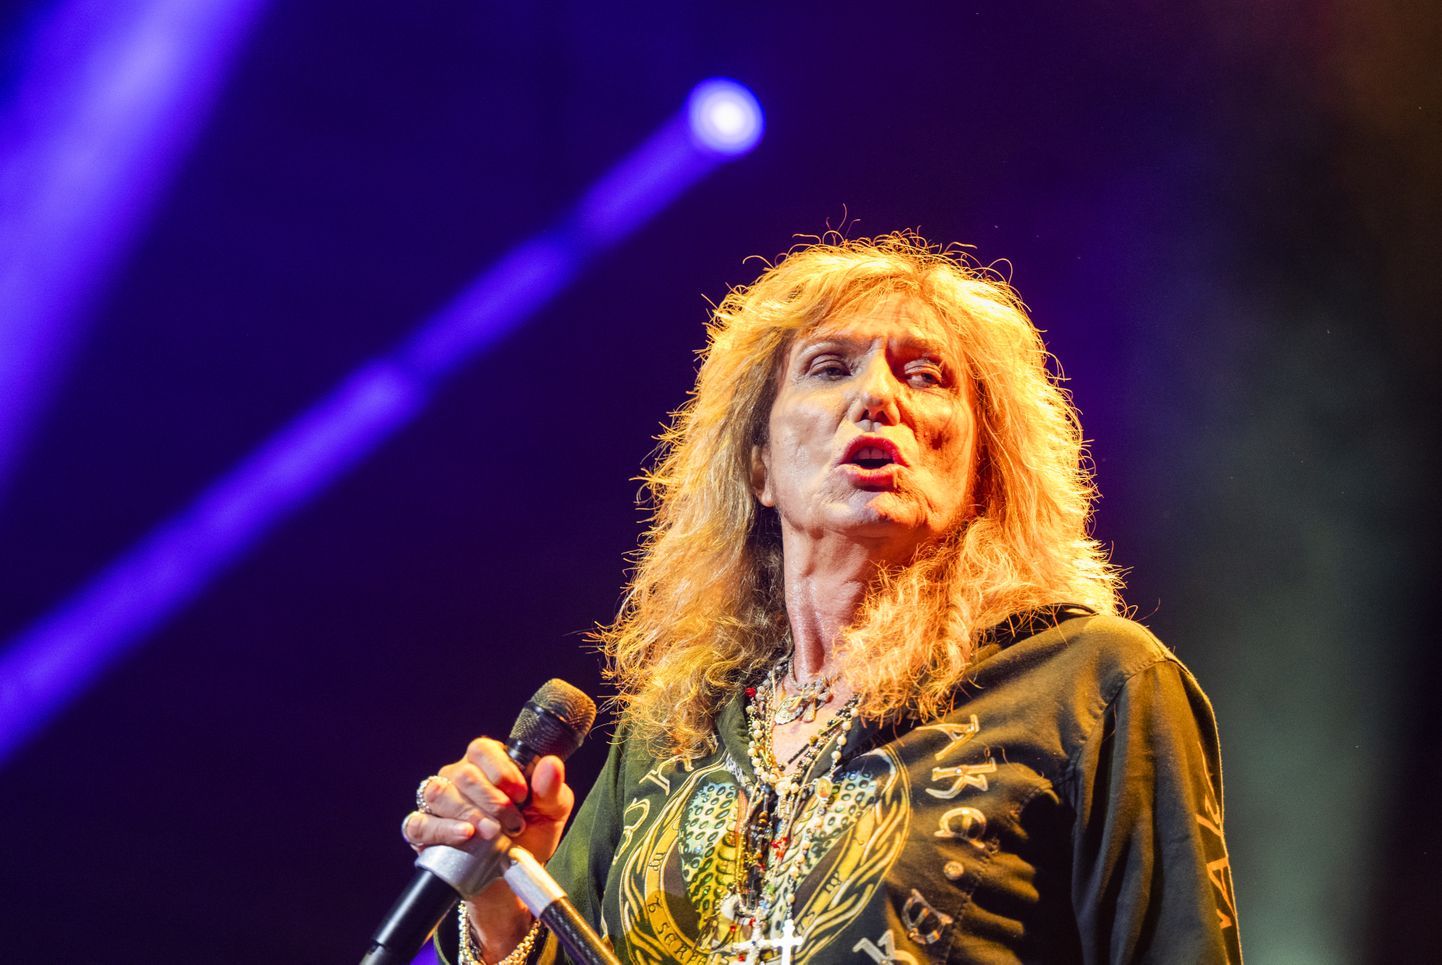 Whitesnake'i ninamees David Coverdale on 72-aastane